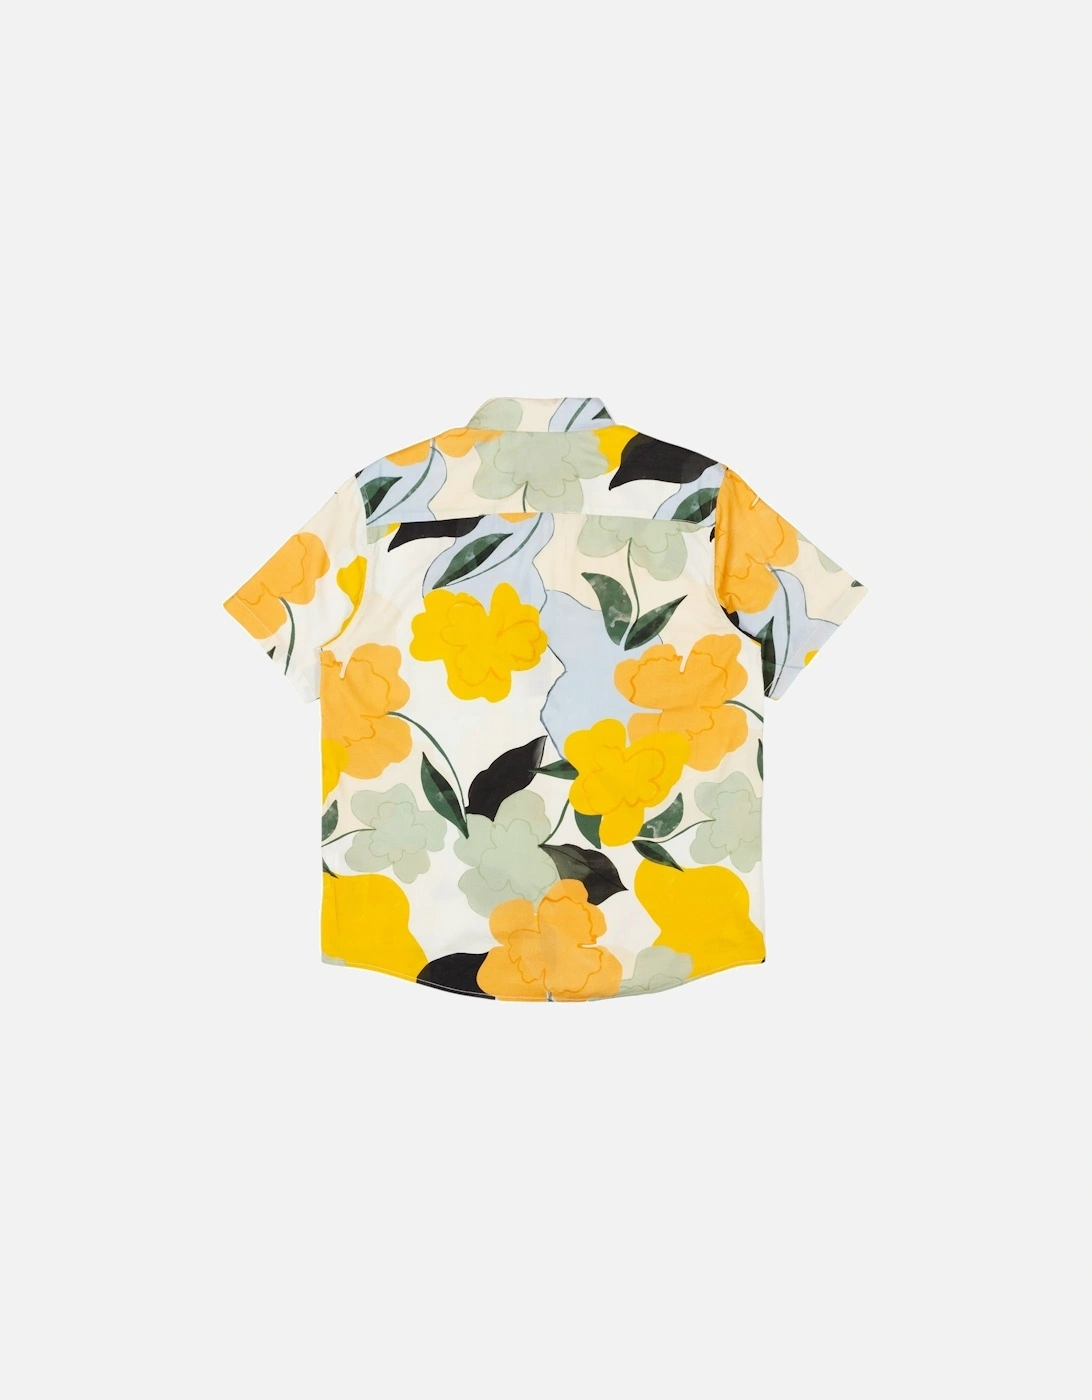 Anytime Shirt - Yellow/Multi